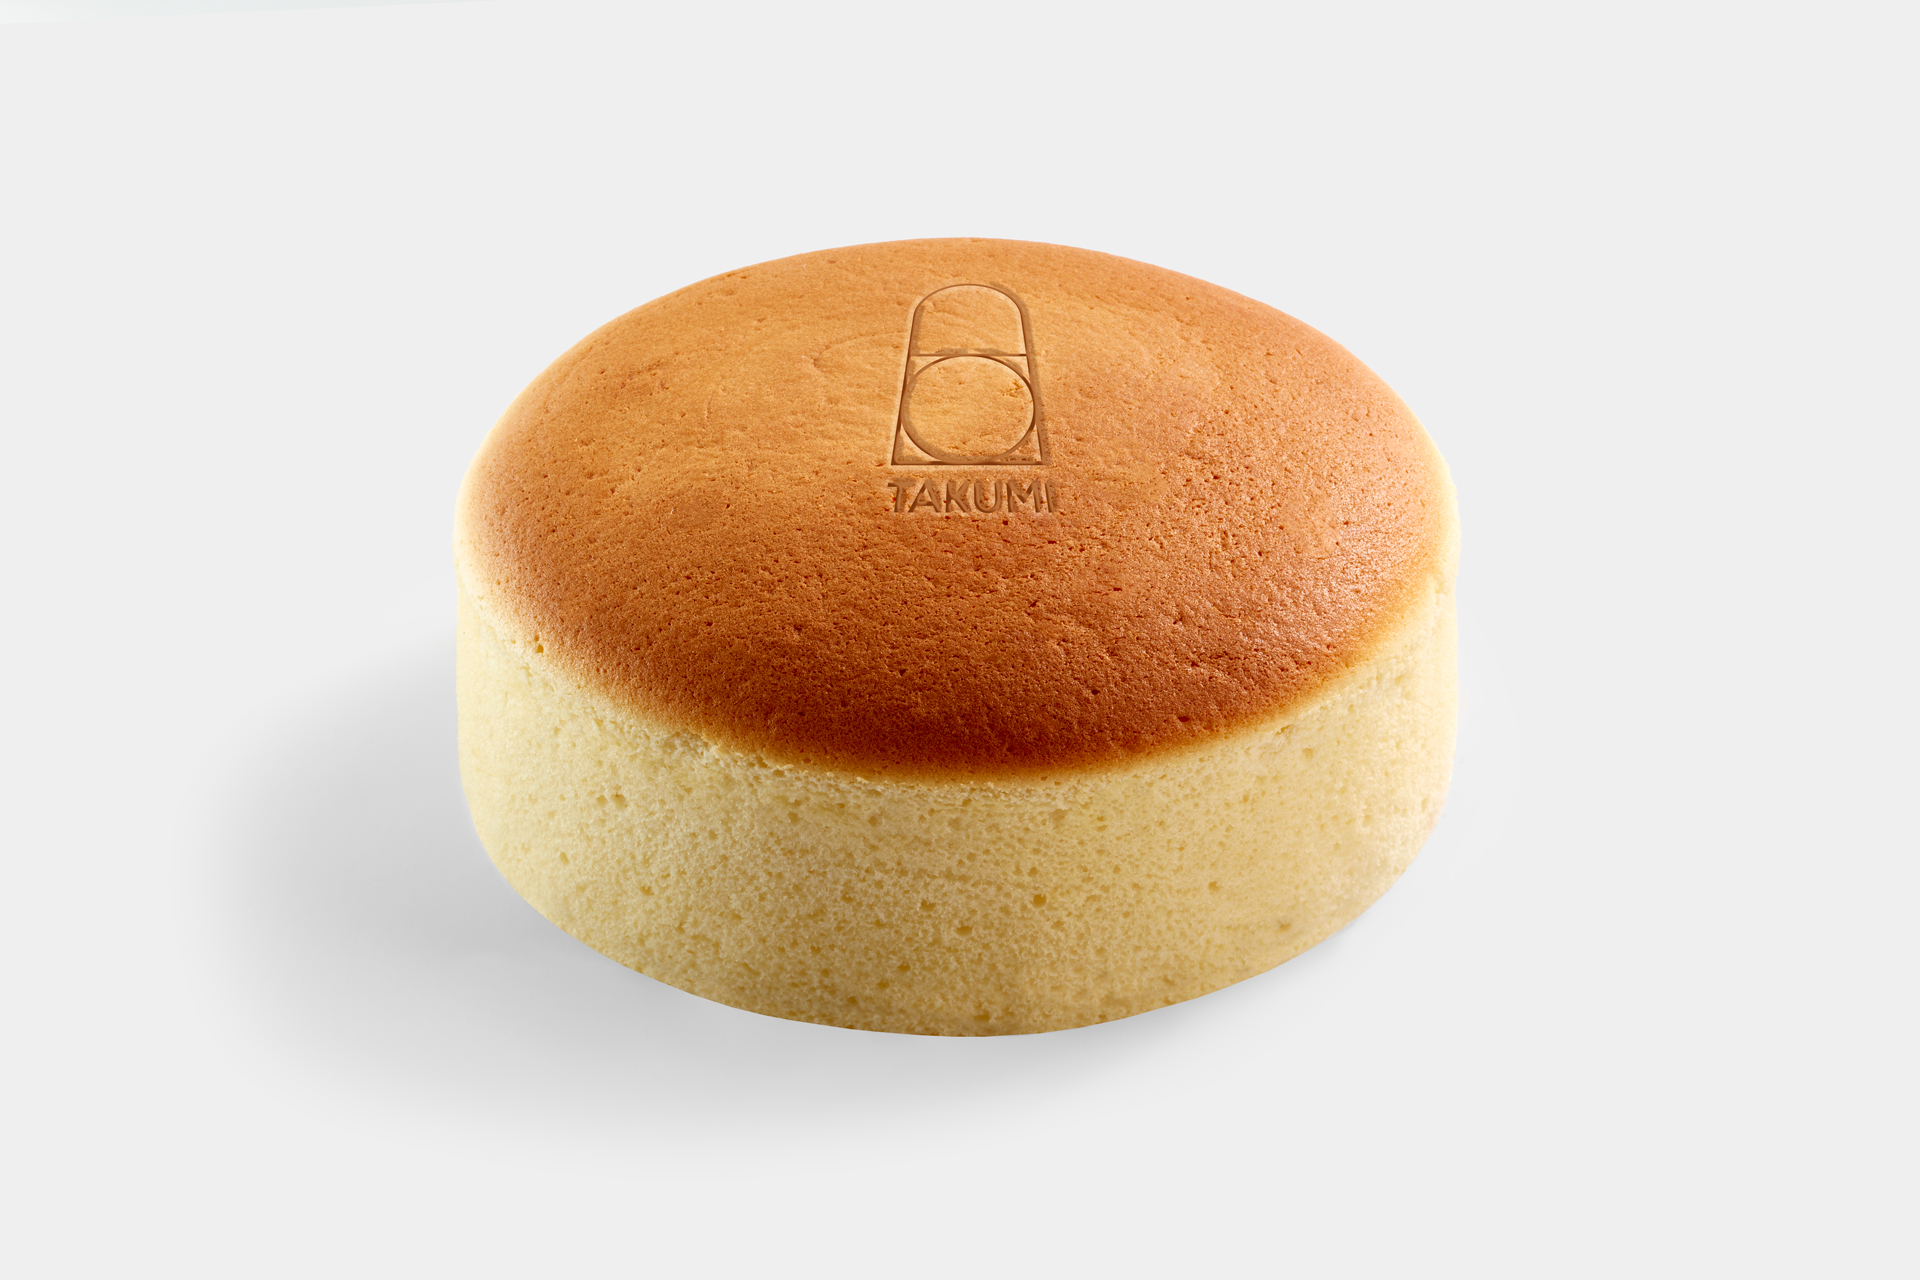 Chaud ou Froid, le Cheesecake japonais se déguste selon vos envies